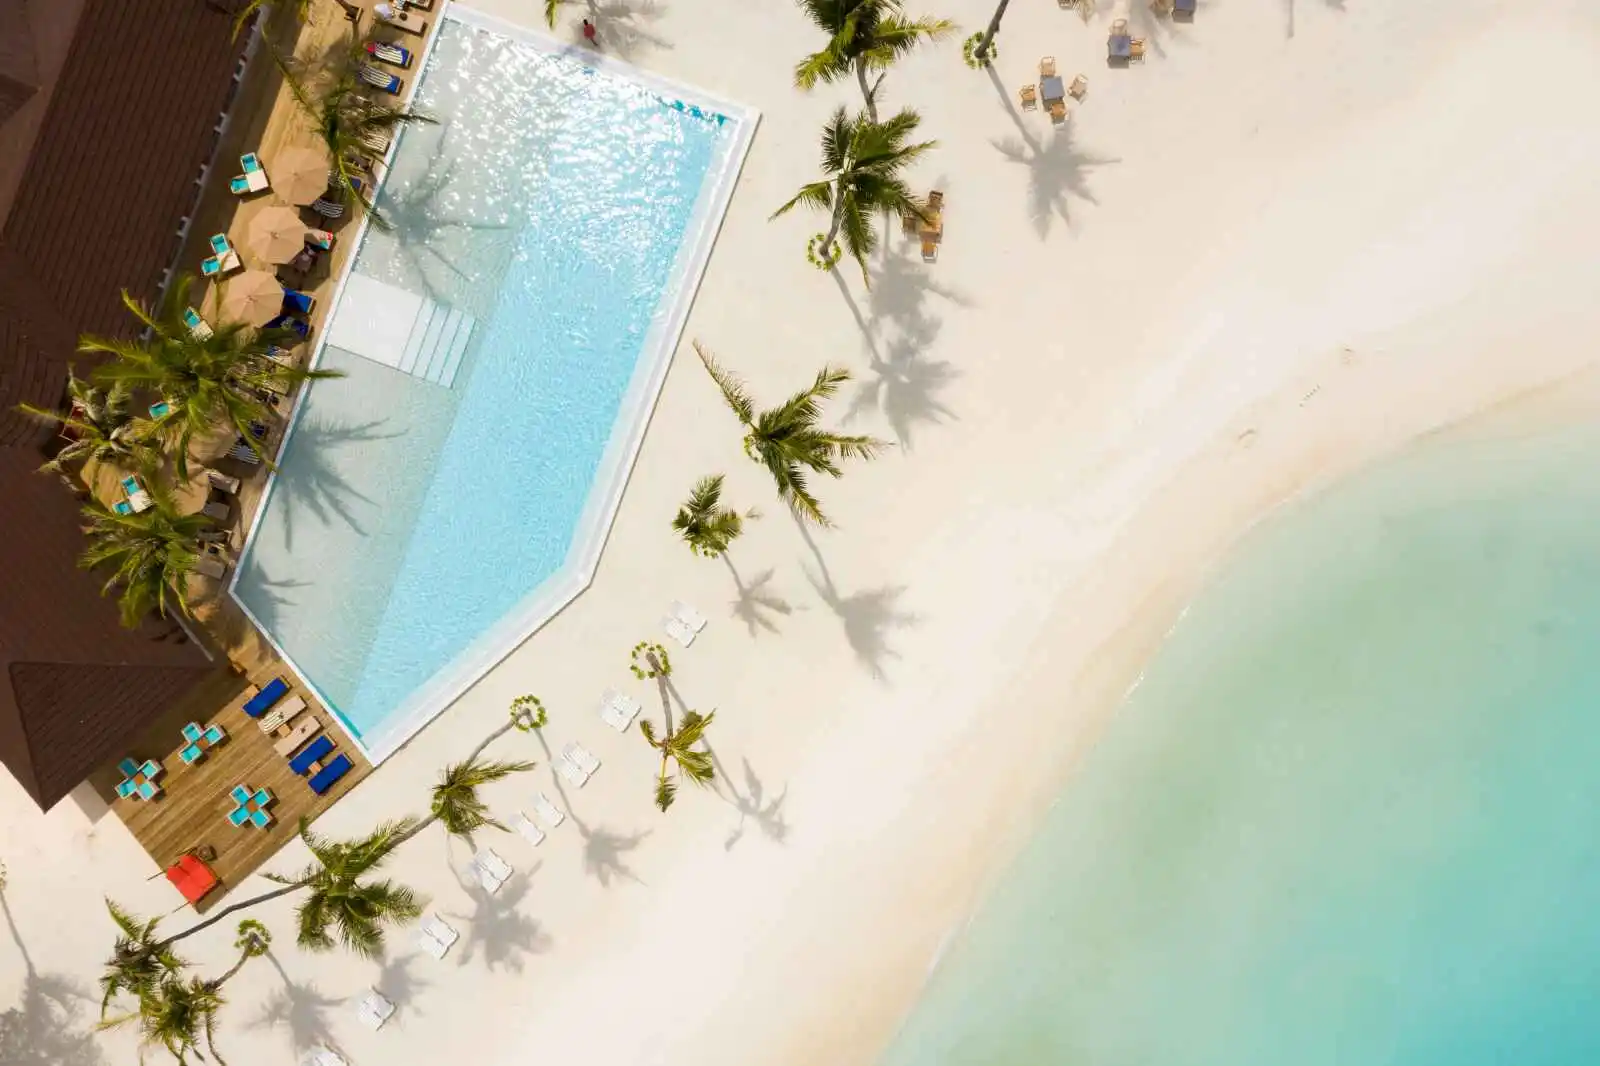 Vue aérienne de la plage et de la piscine de l'hôtel, Sun Siyam Olhuveli